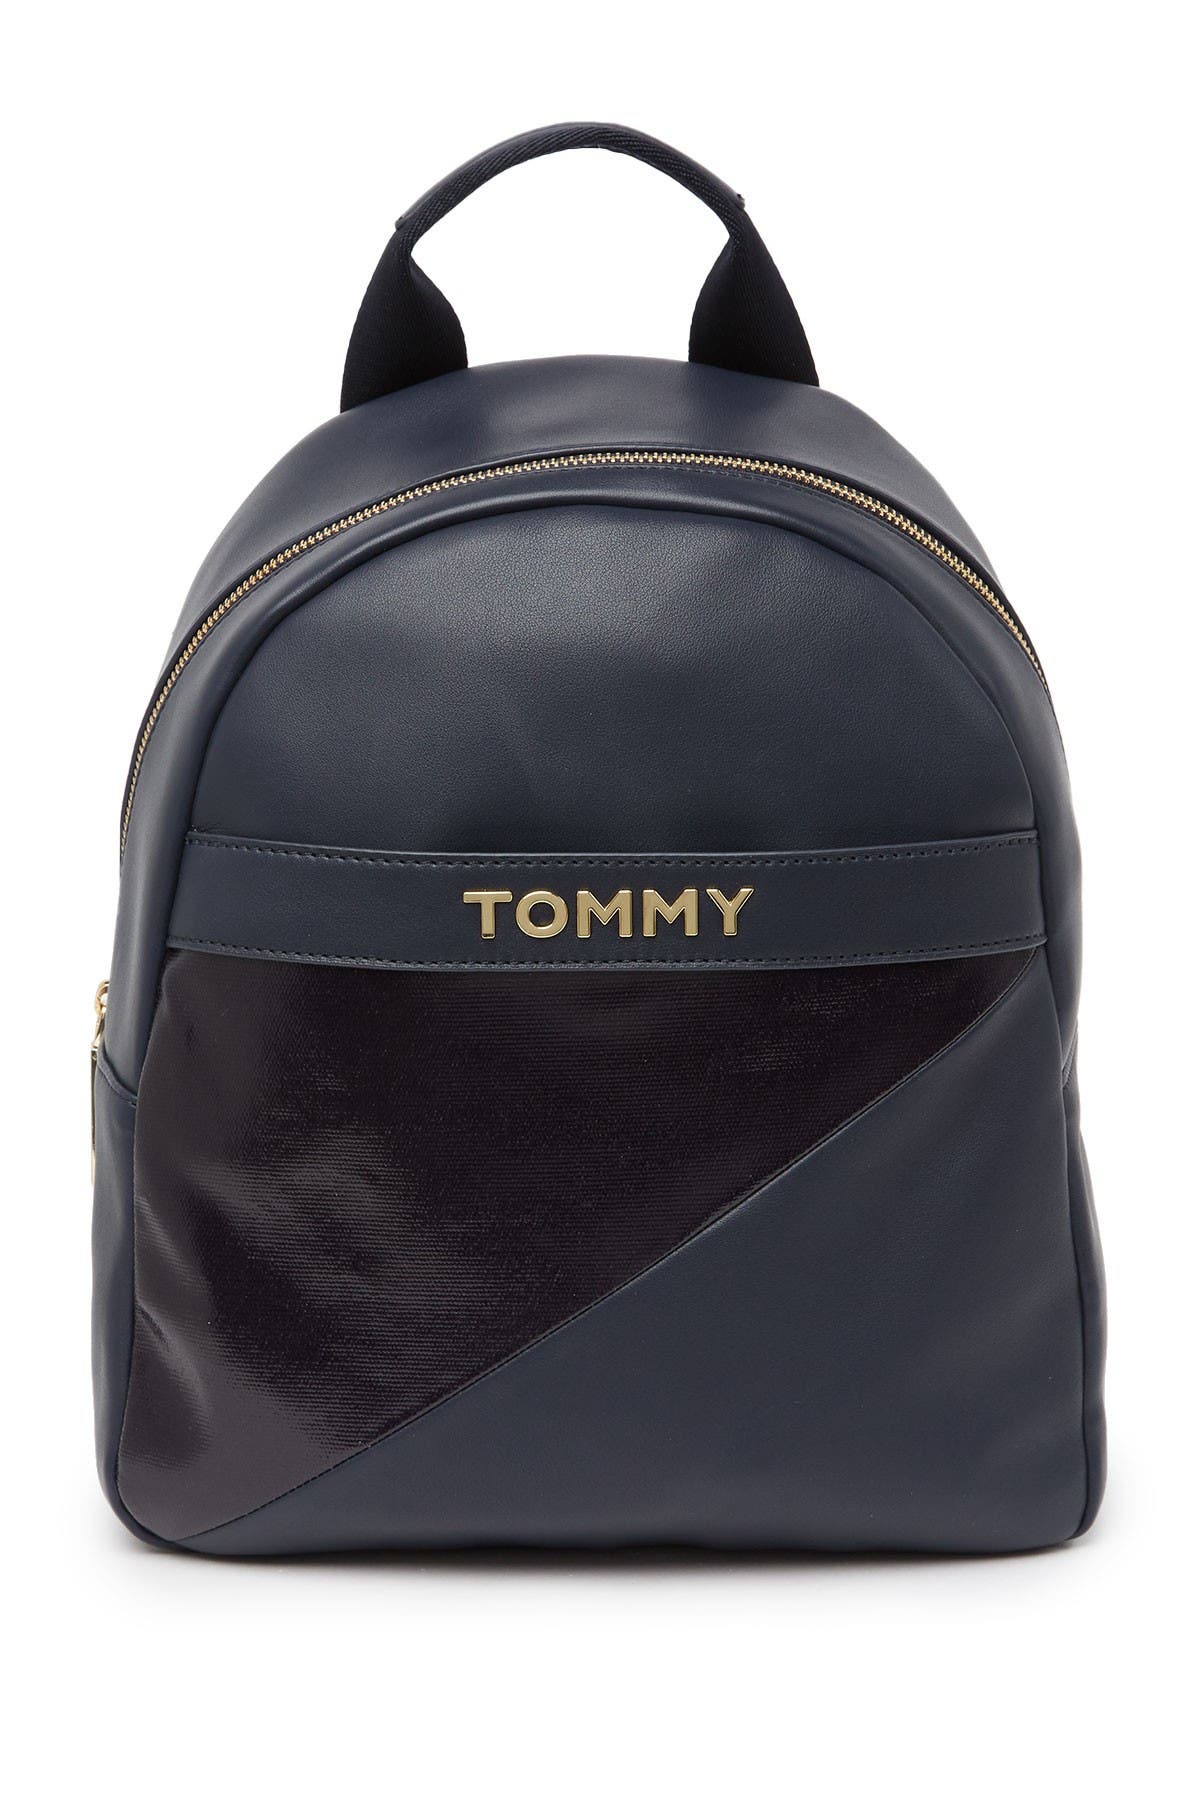 tommy hilfiger diaper bag backpack